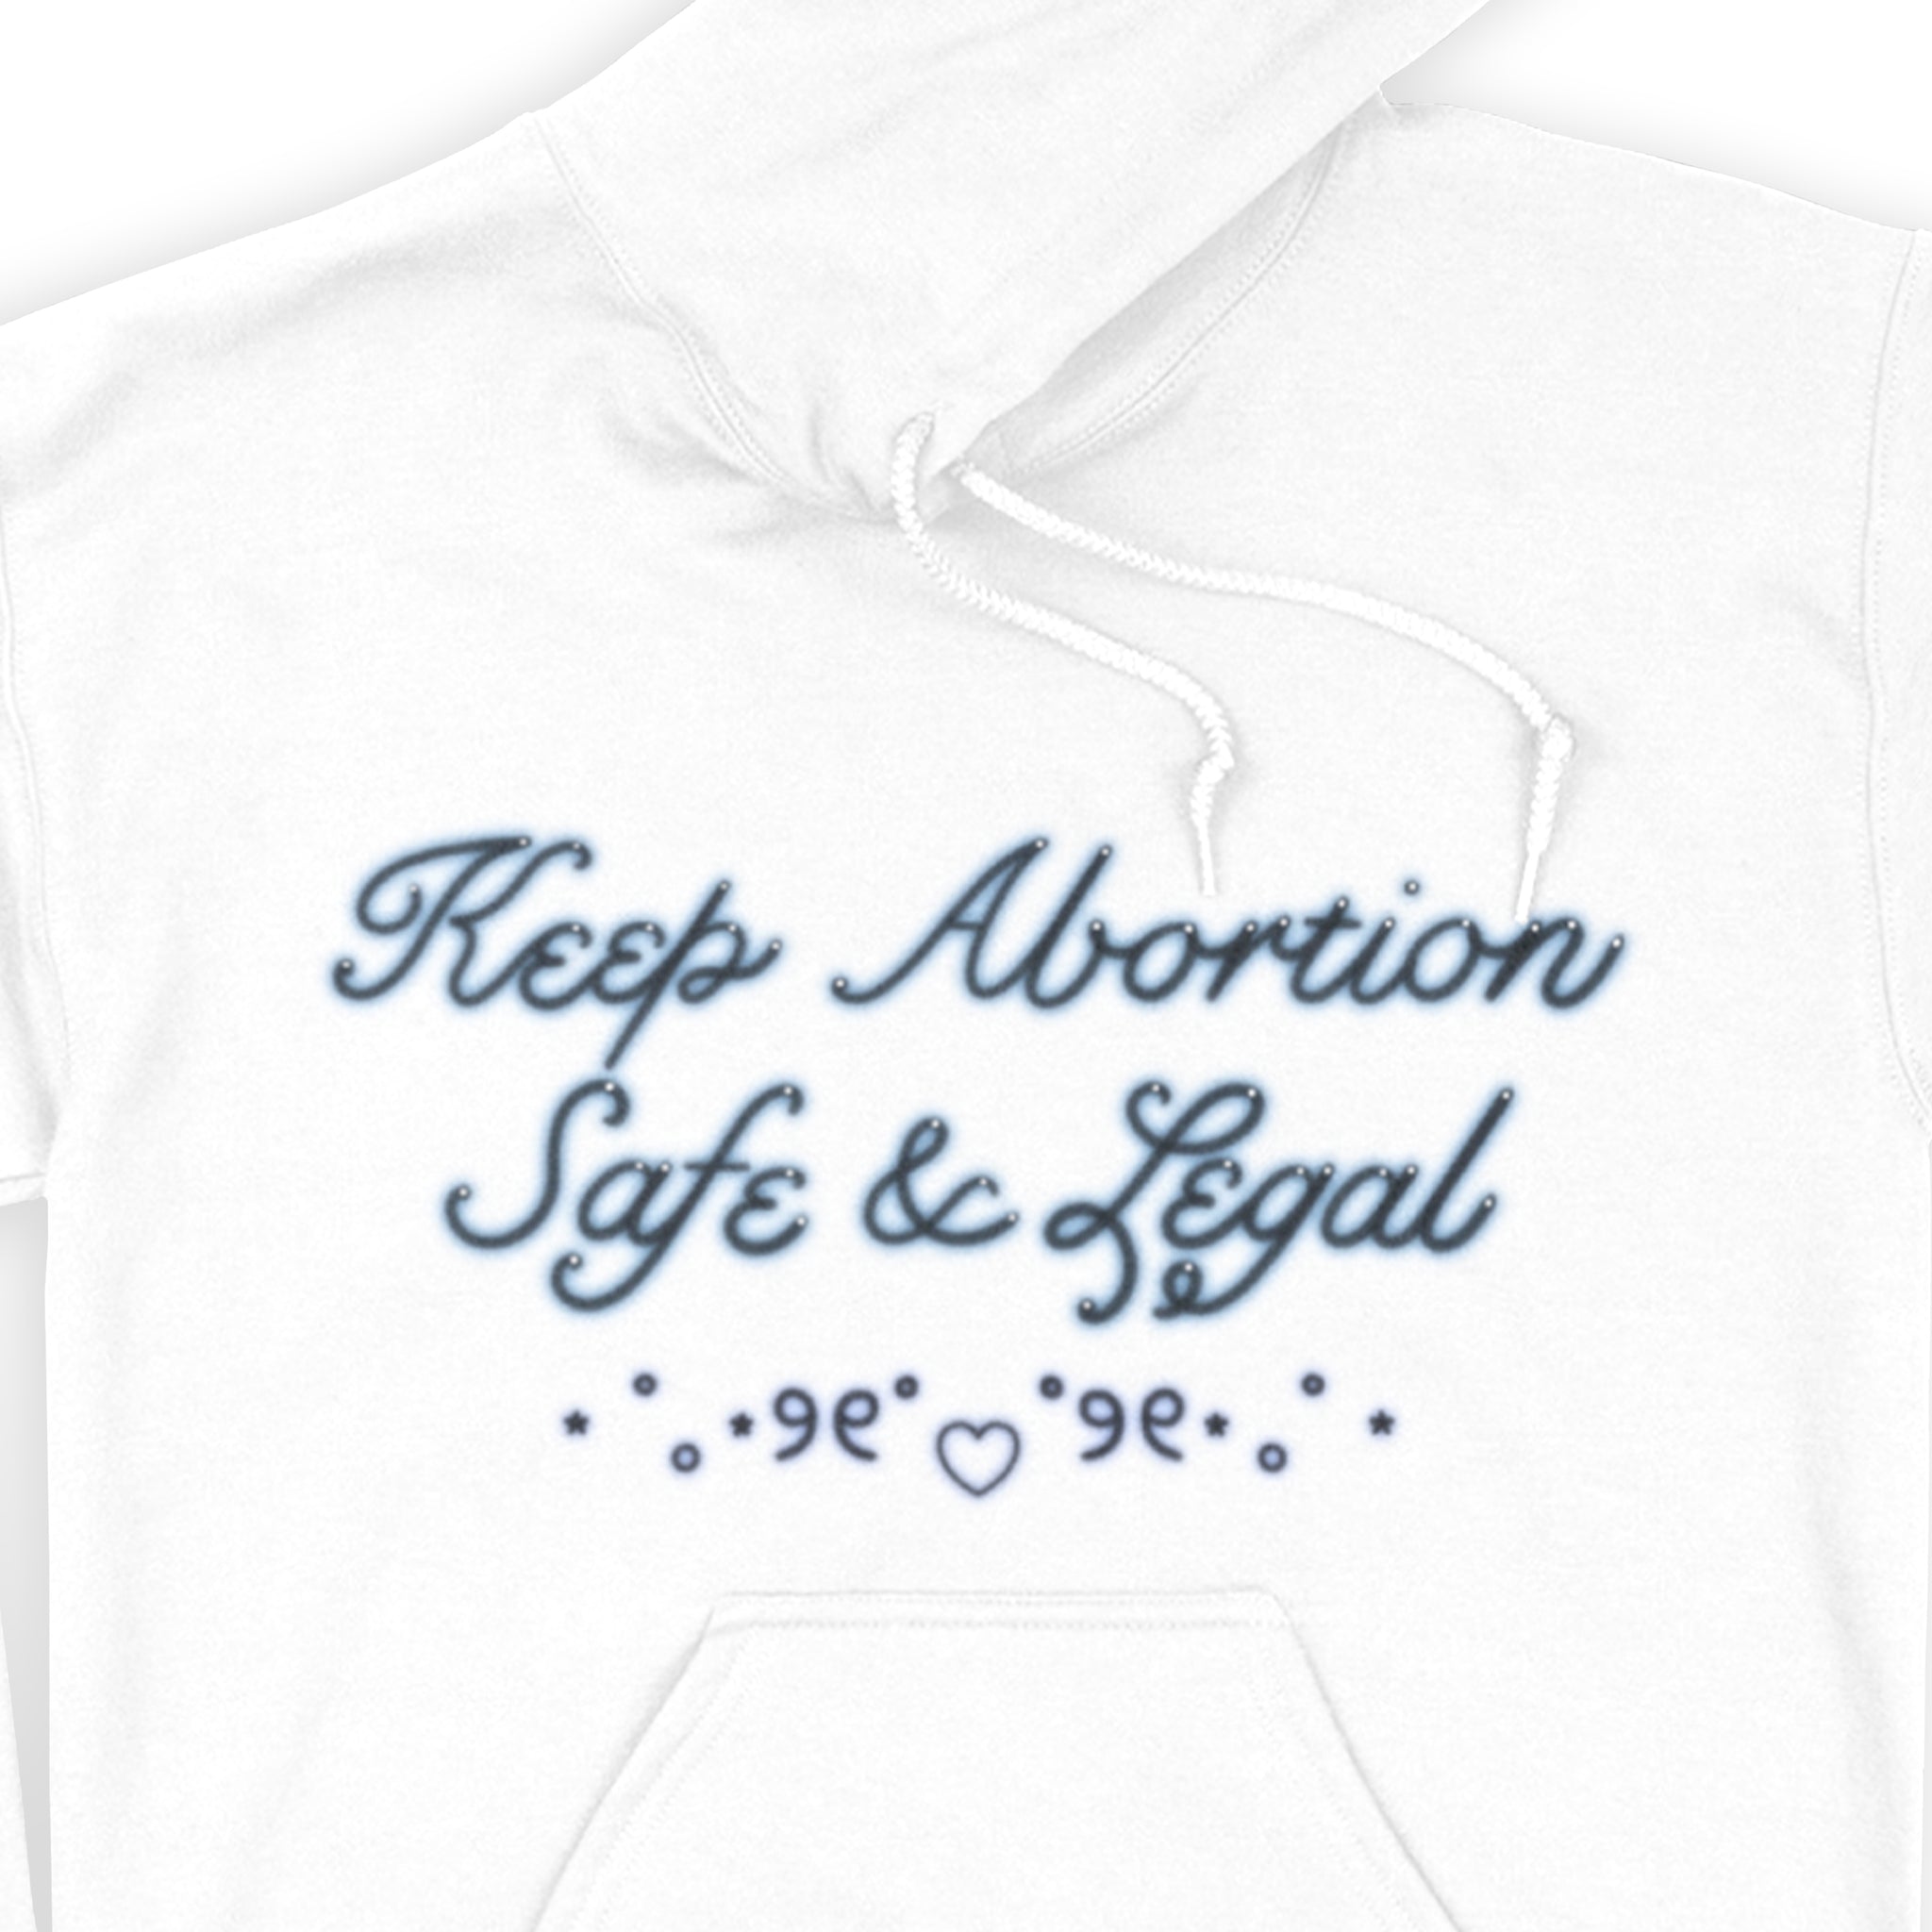 Halten Sie Abtreibung sicher und legal. Kapuzenpullover